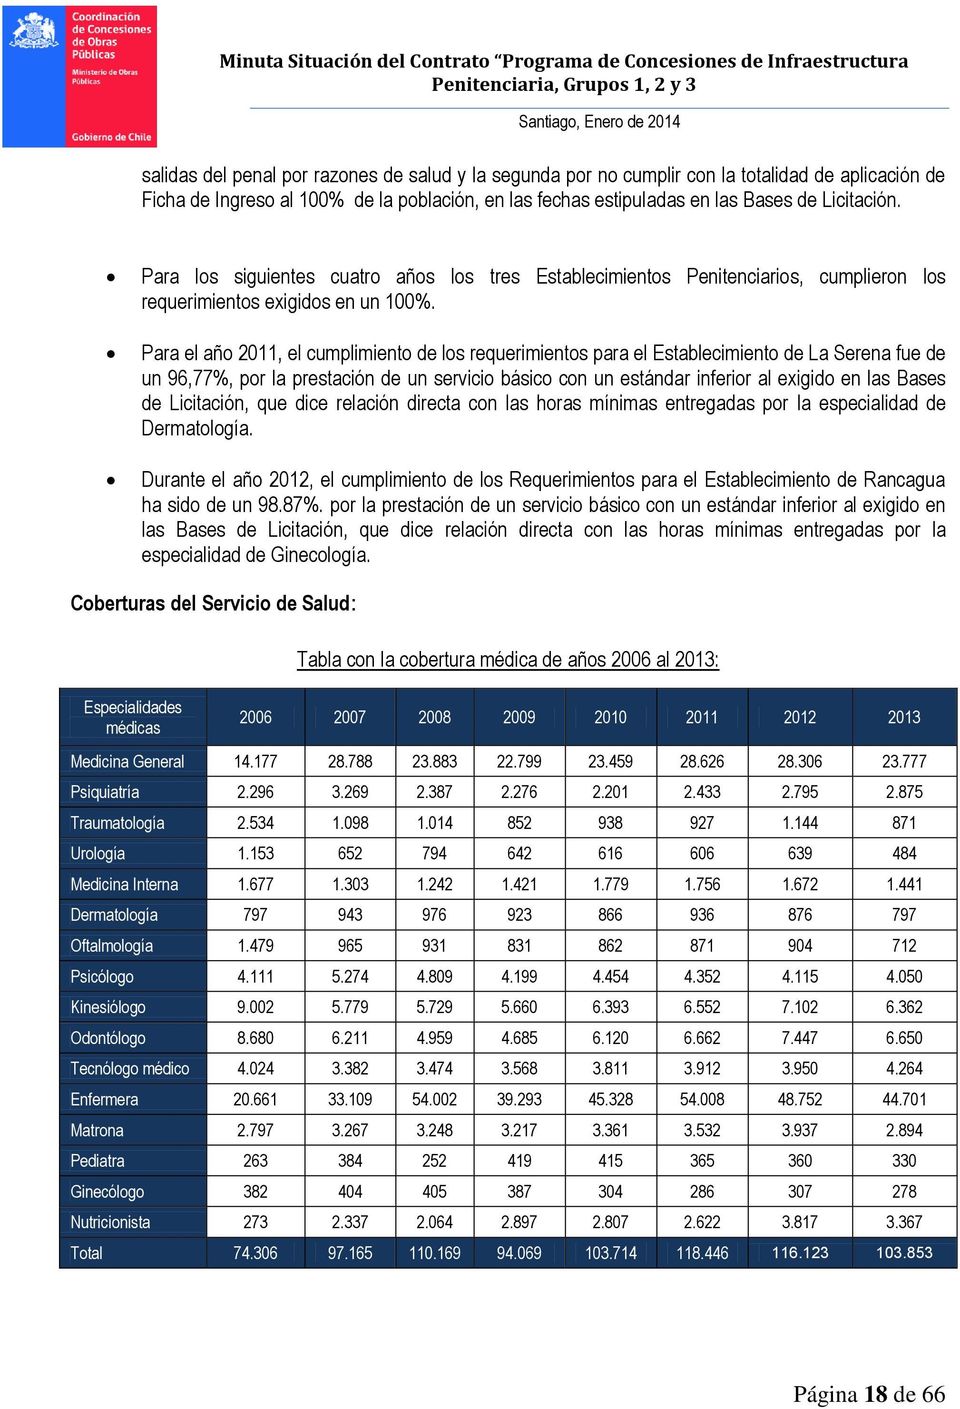 Para el año 2011, el cumplimiento de los requerimientos para el Establecimiento de La Serena fue de un 96,77%, por la prestación de un servicio básico con un estándar inferior al exigido en las Bases